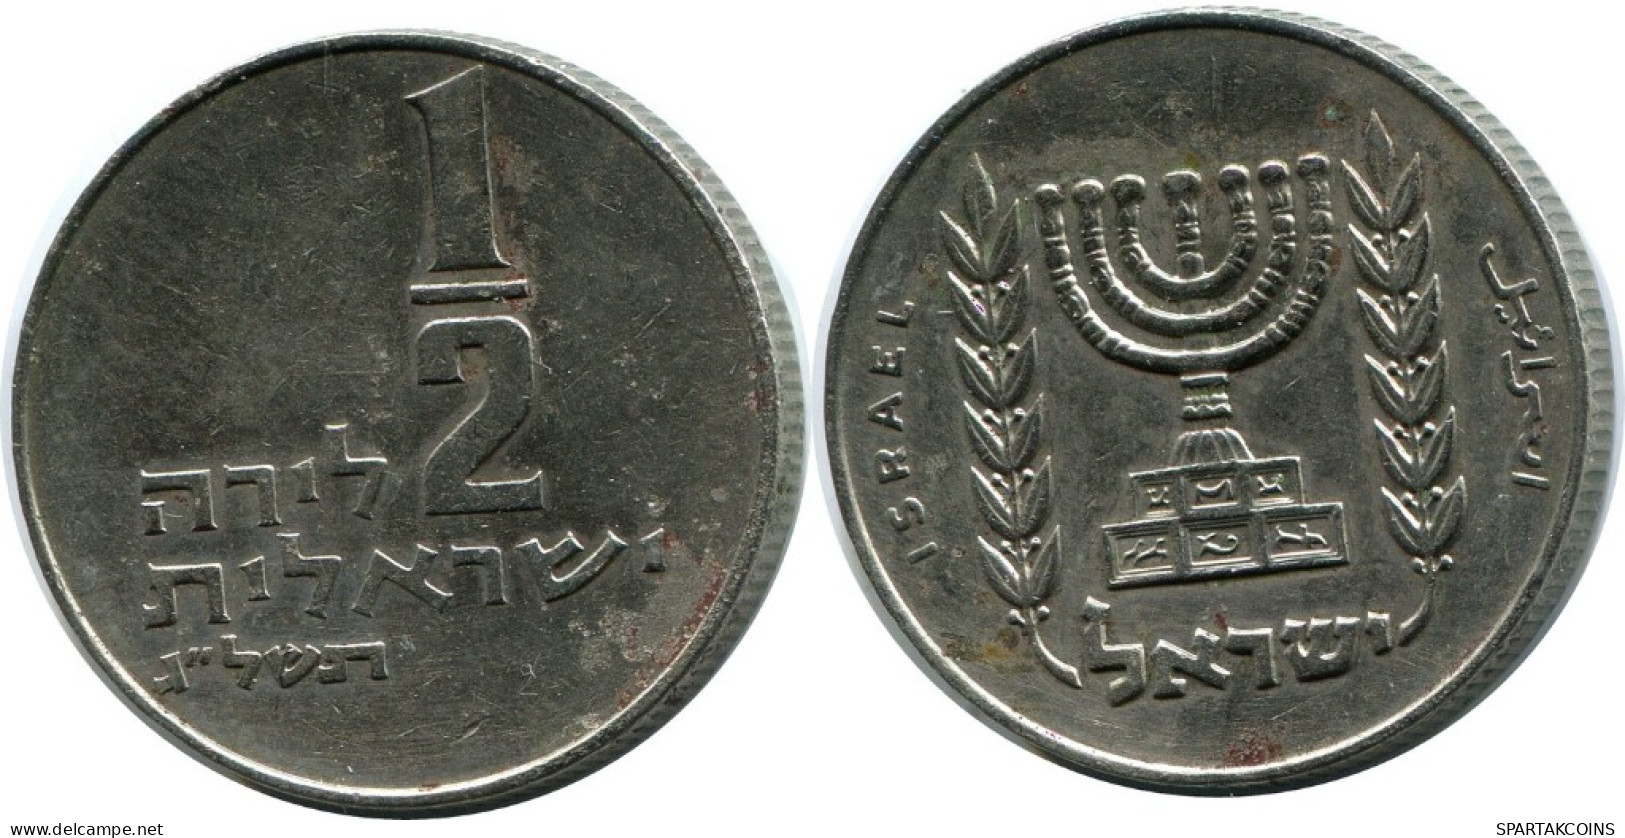 1/2 LIRA 1973 ISRAEL Coin #AH942.U.A - Israel